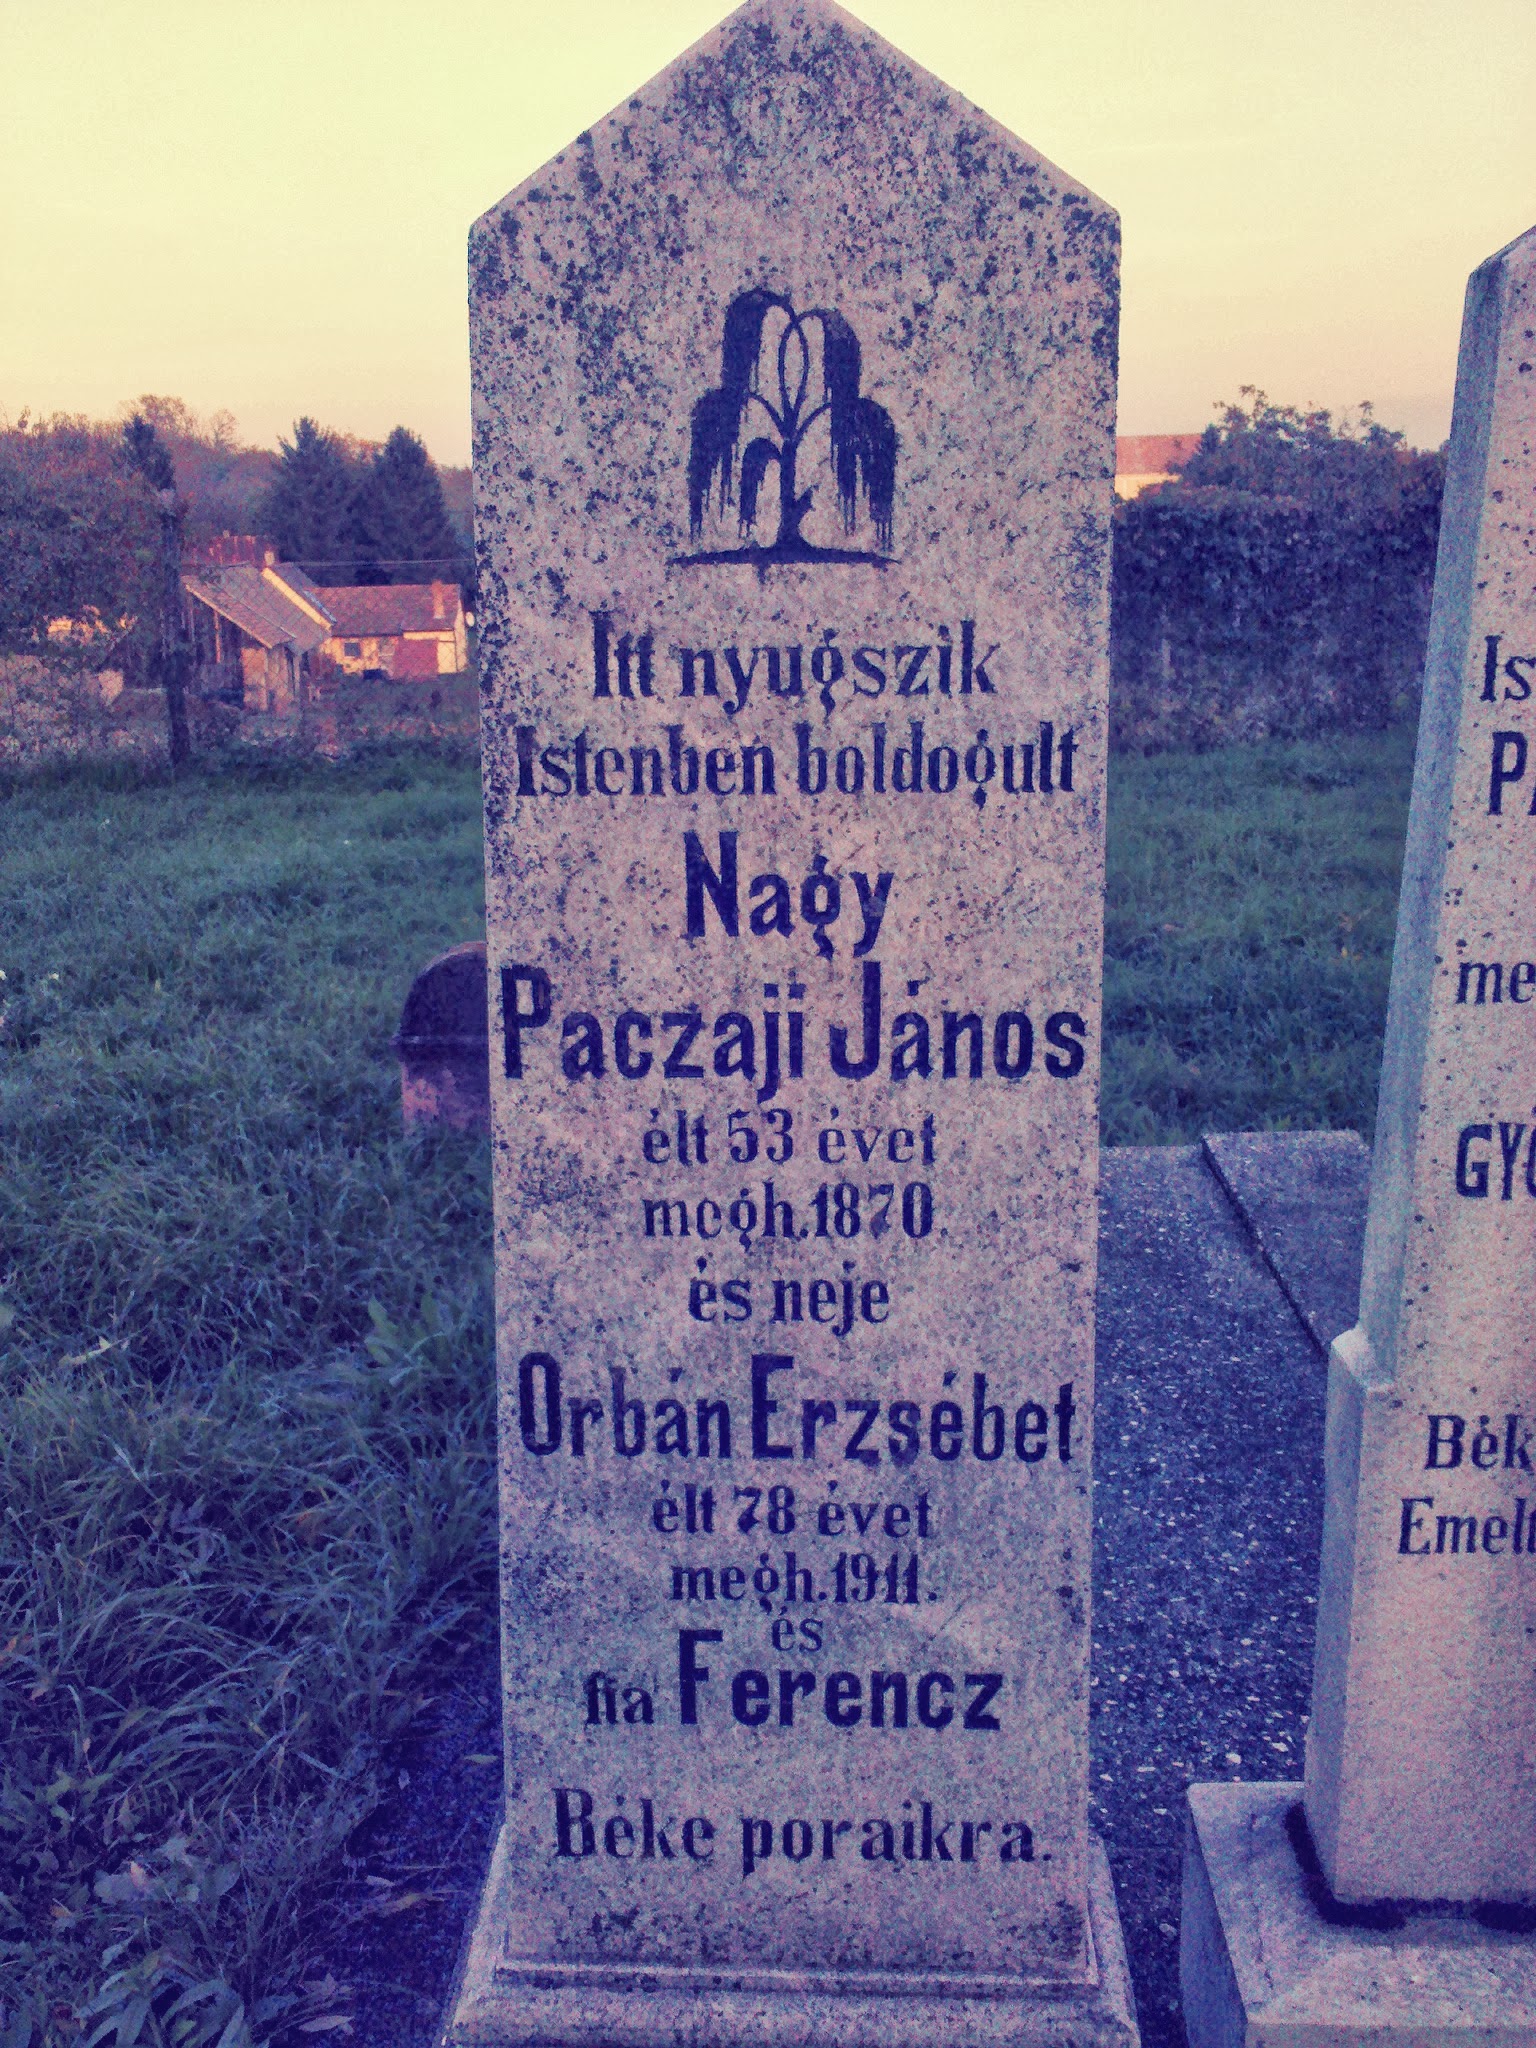 Patczai János és Orbán Erzsébet sírköve (Somogyjád).jpg